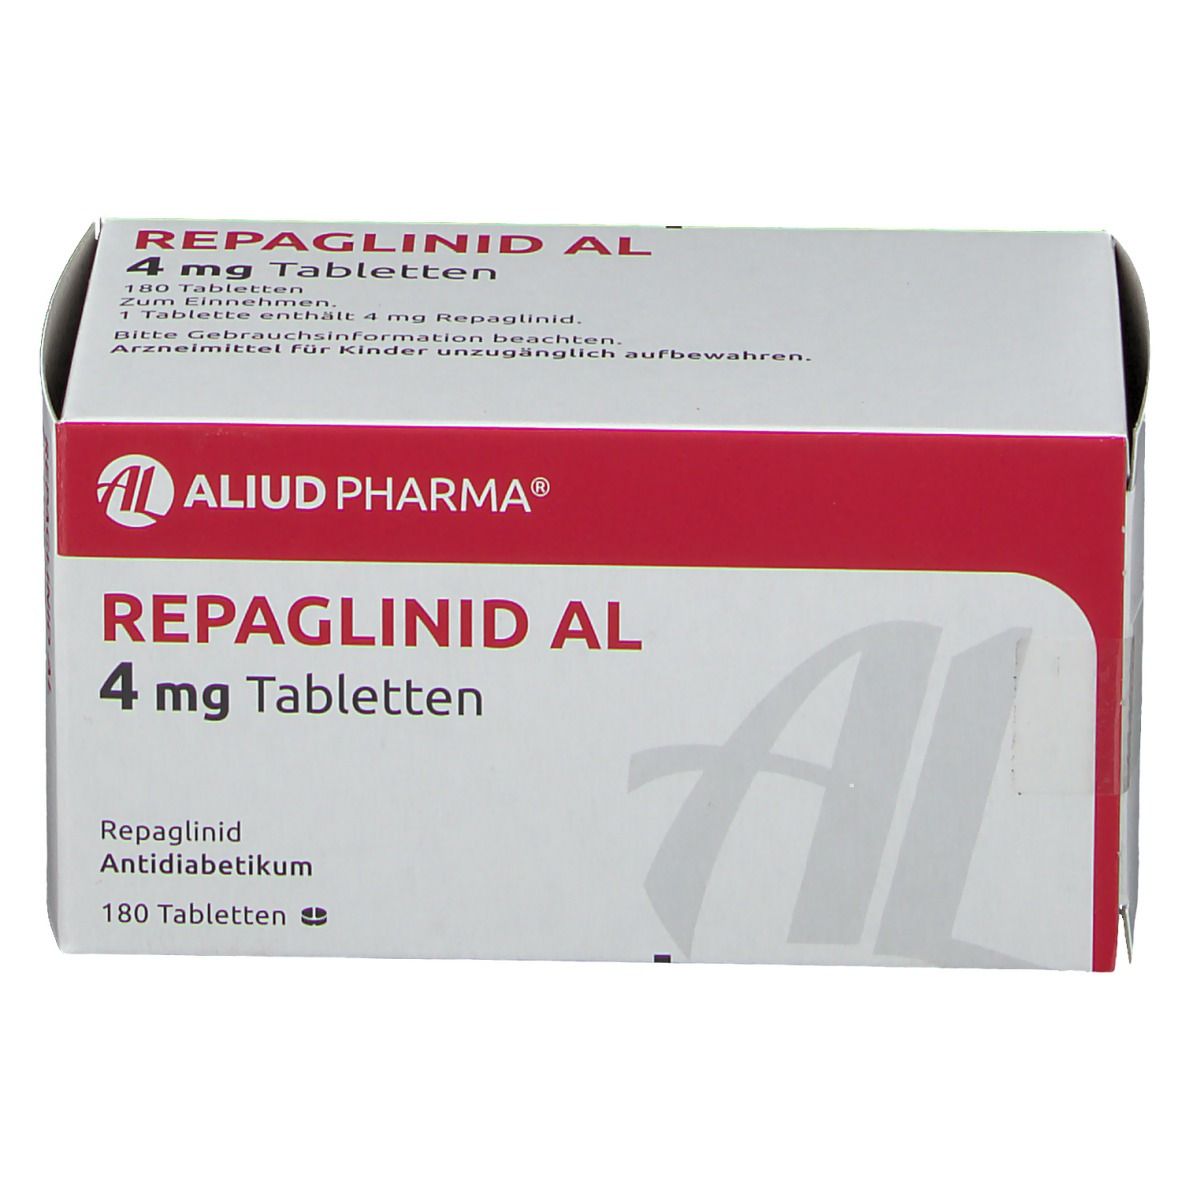 Repaglinid AL 4 mg